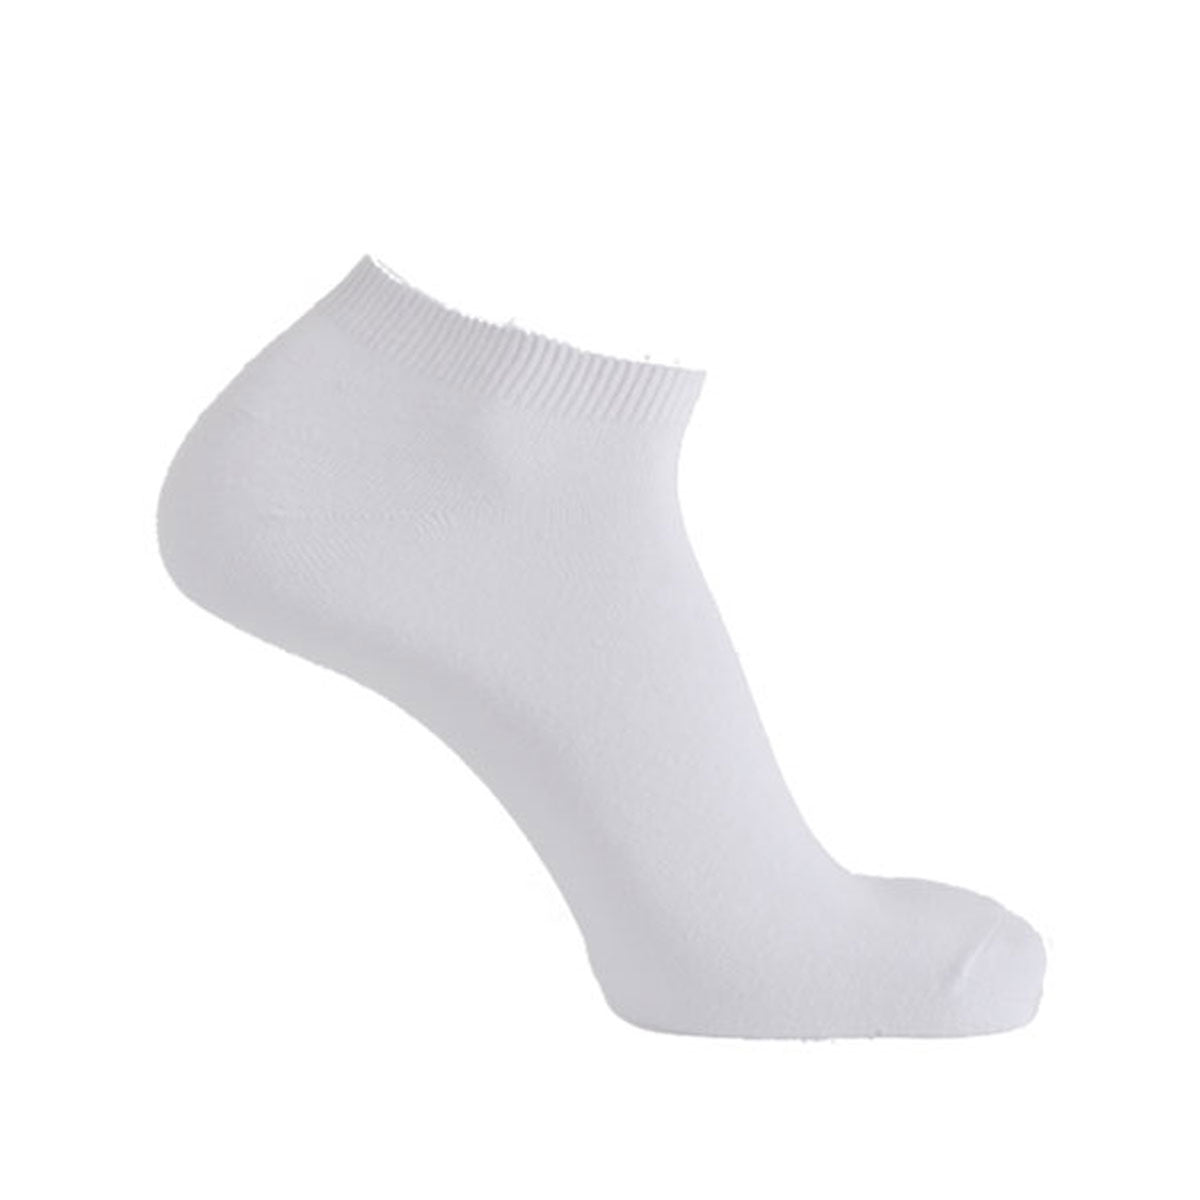 Multi Sport Trainer Socks - White - Pack of 5 1